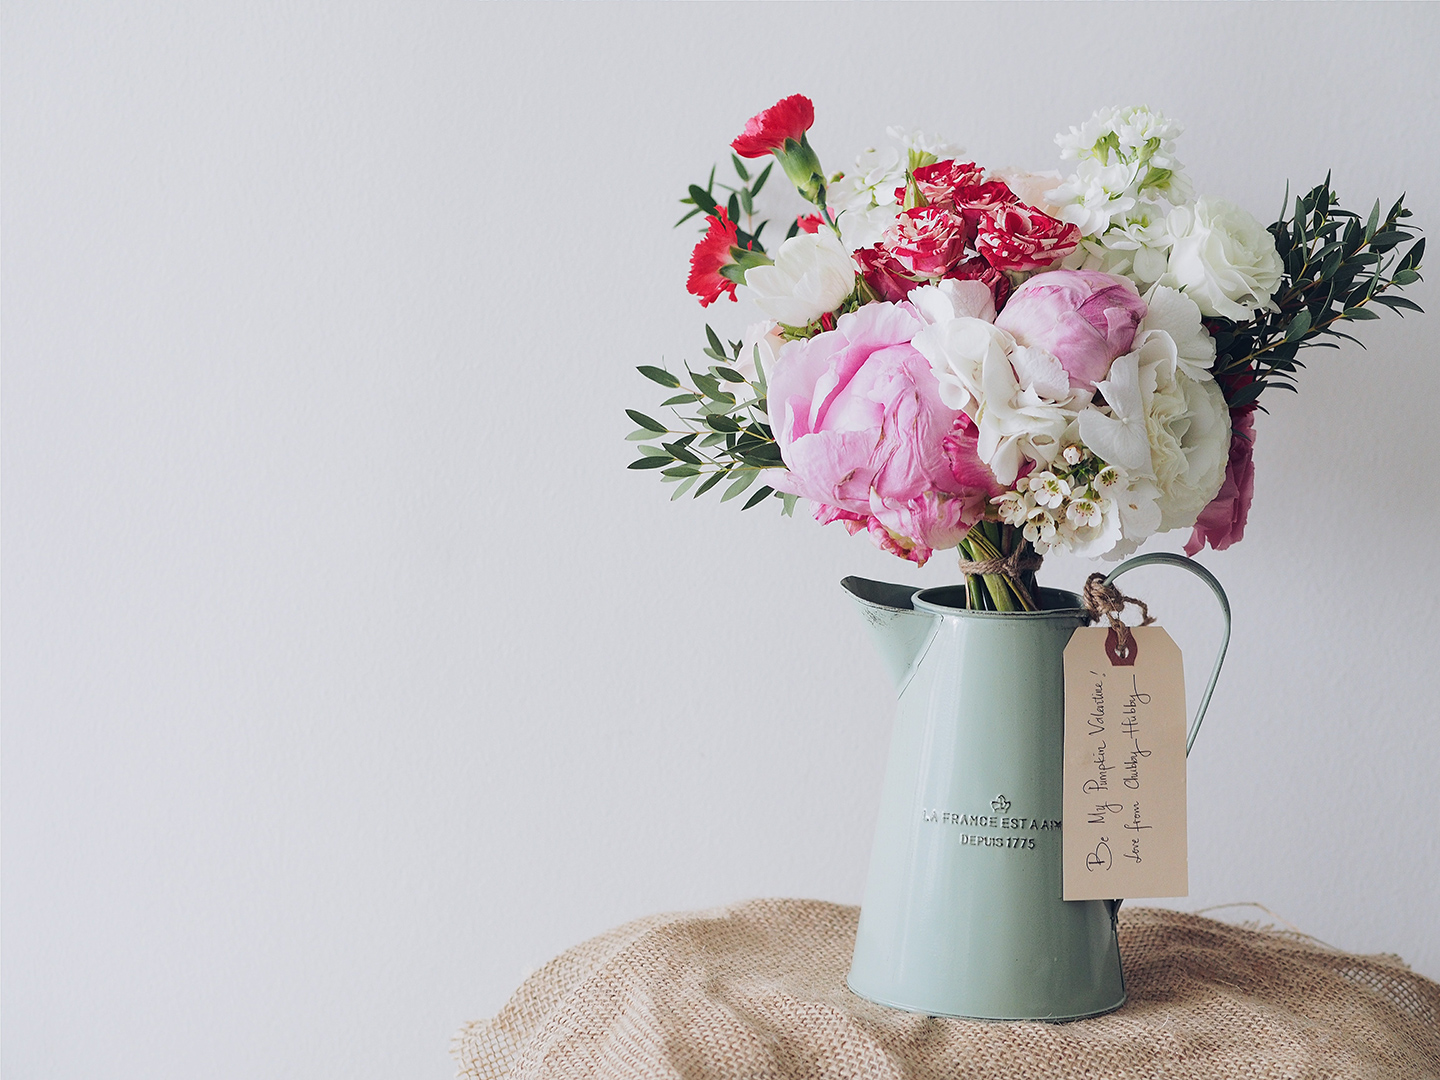 Blumenstrauß mit Pifngstrosen & weißen Rosen wird als Geschenk zum Valentinstag verschenkt.